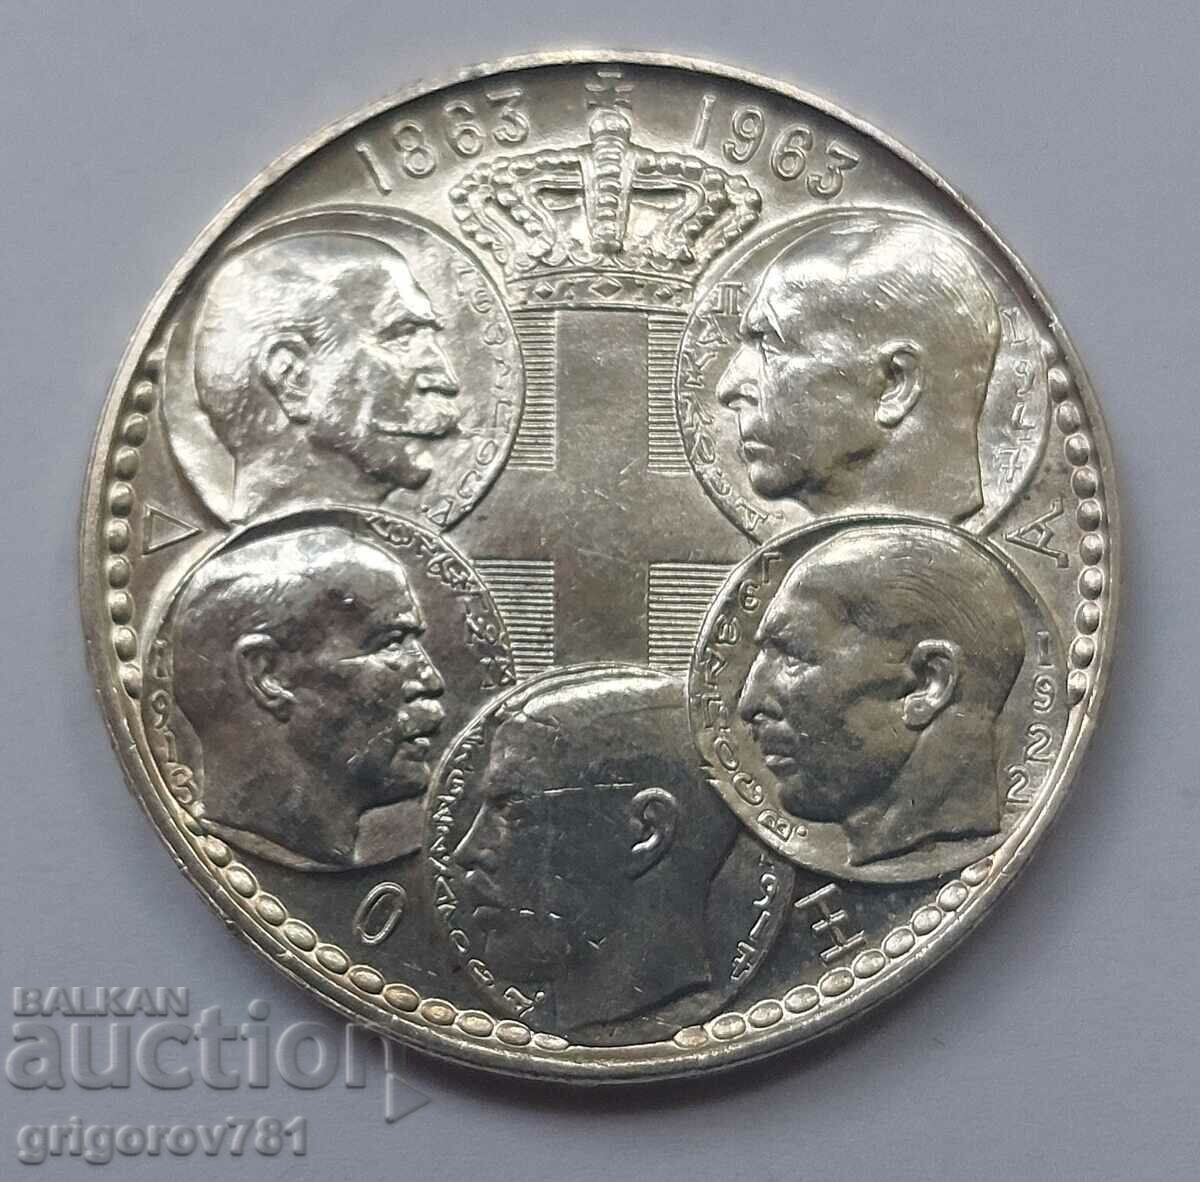 30 drachma silver 1963 - silver coin #6